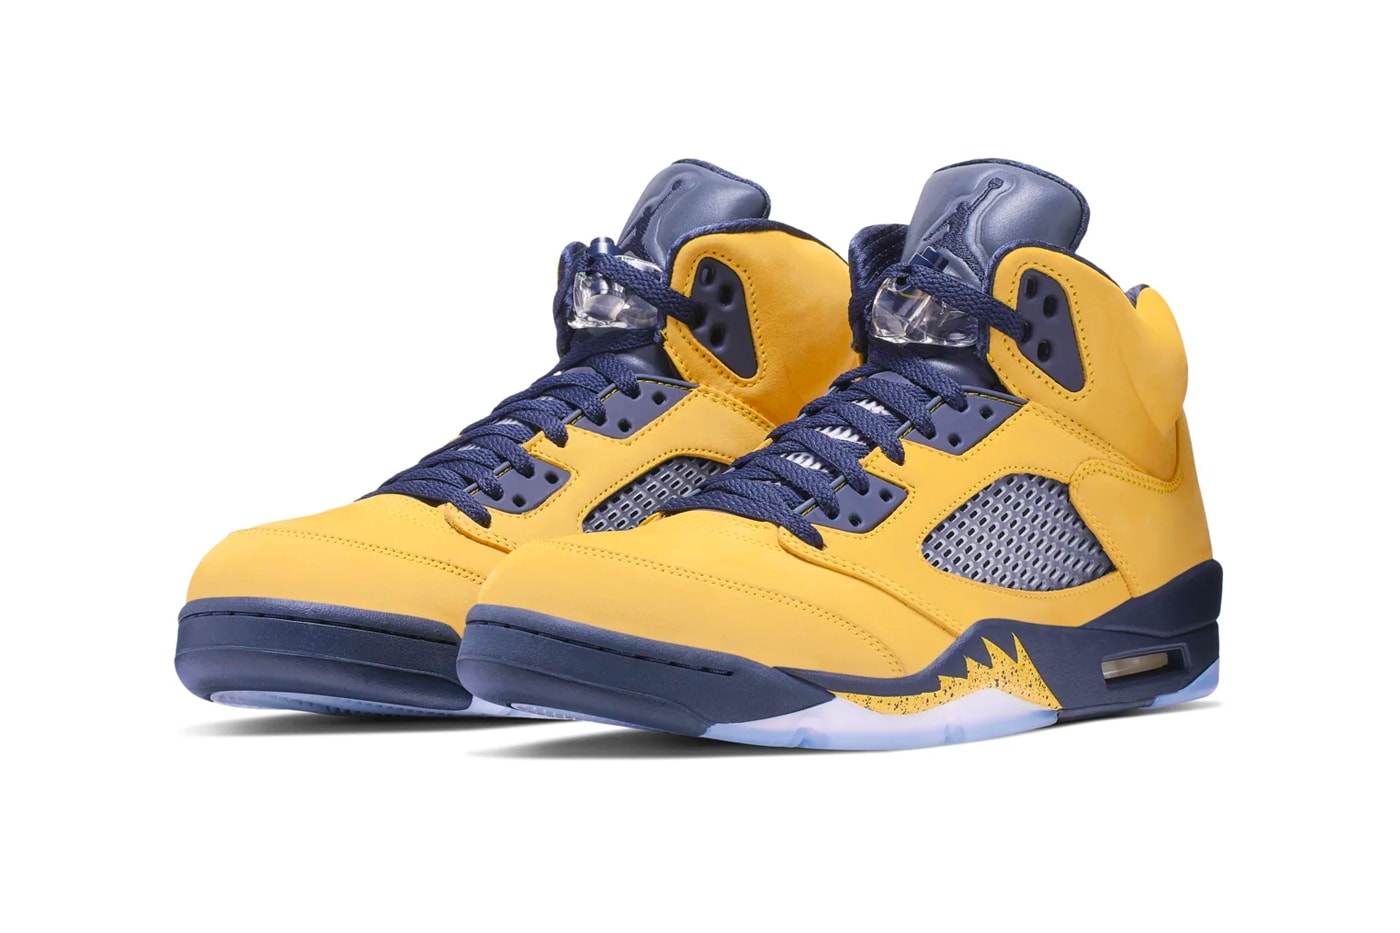 Air Jordan 5 Michigan Inspire Release Michigan Wolverines NBA Michael Jordan Shoes Sneakers Kicks Trailers Basketball college AJ5 Amarillo Navy